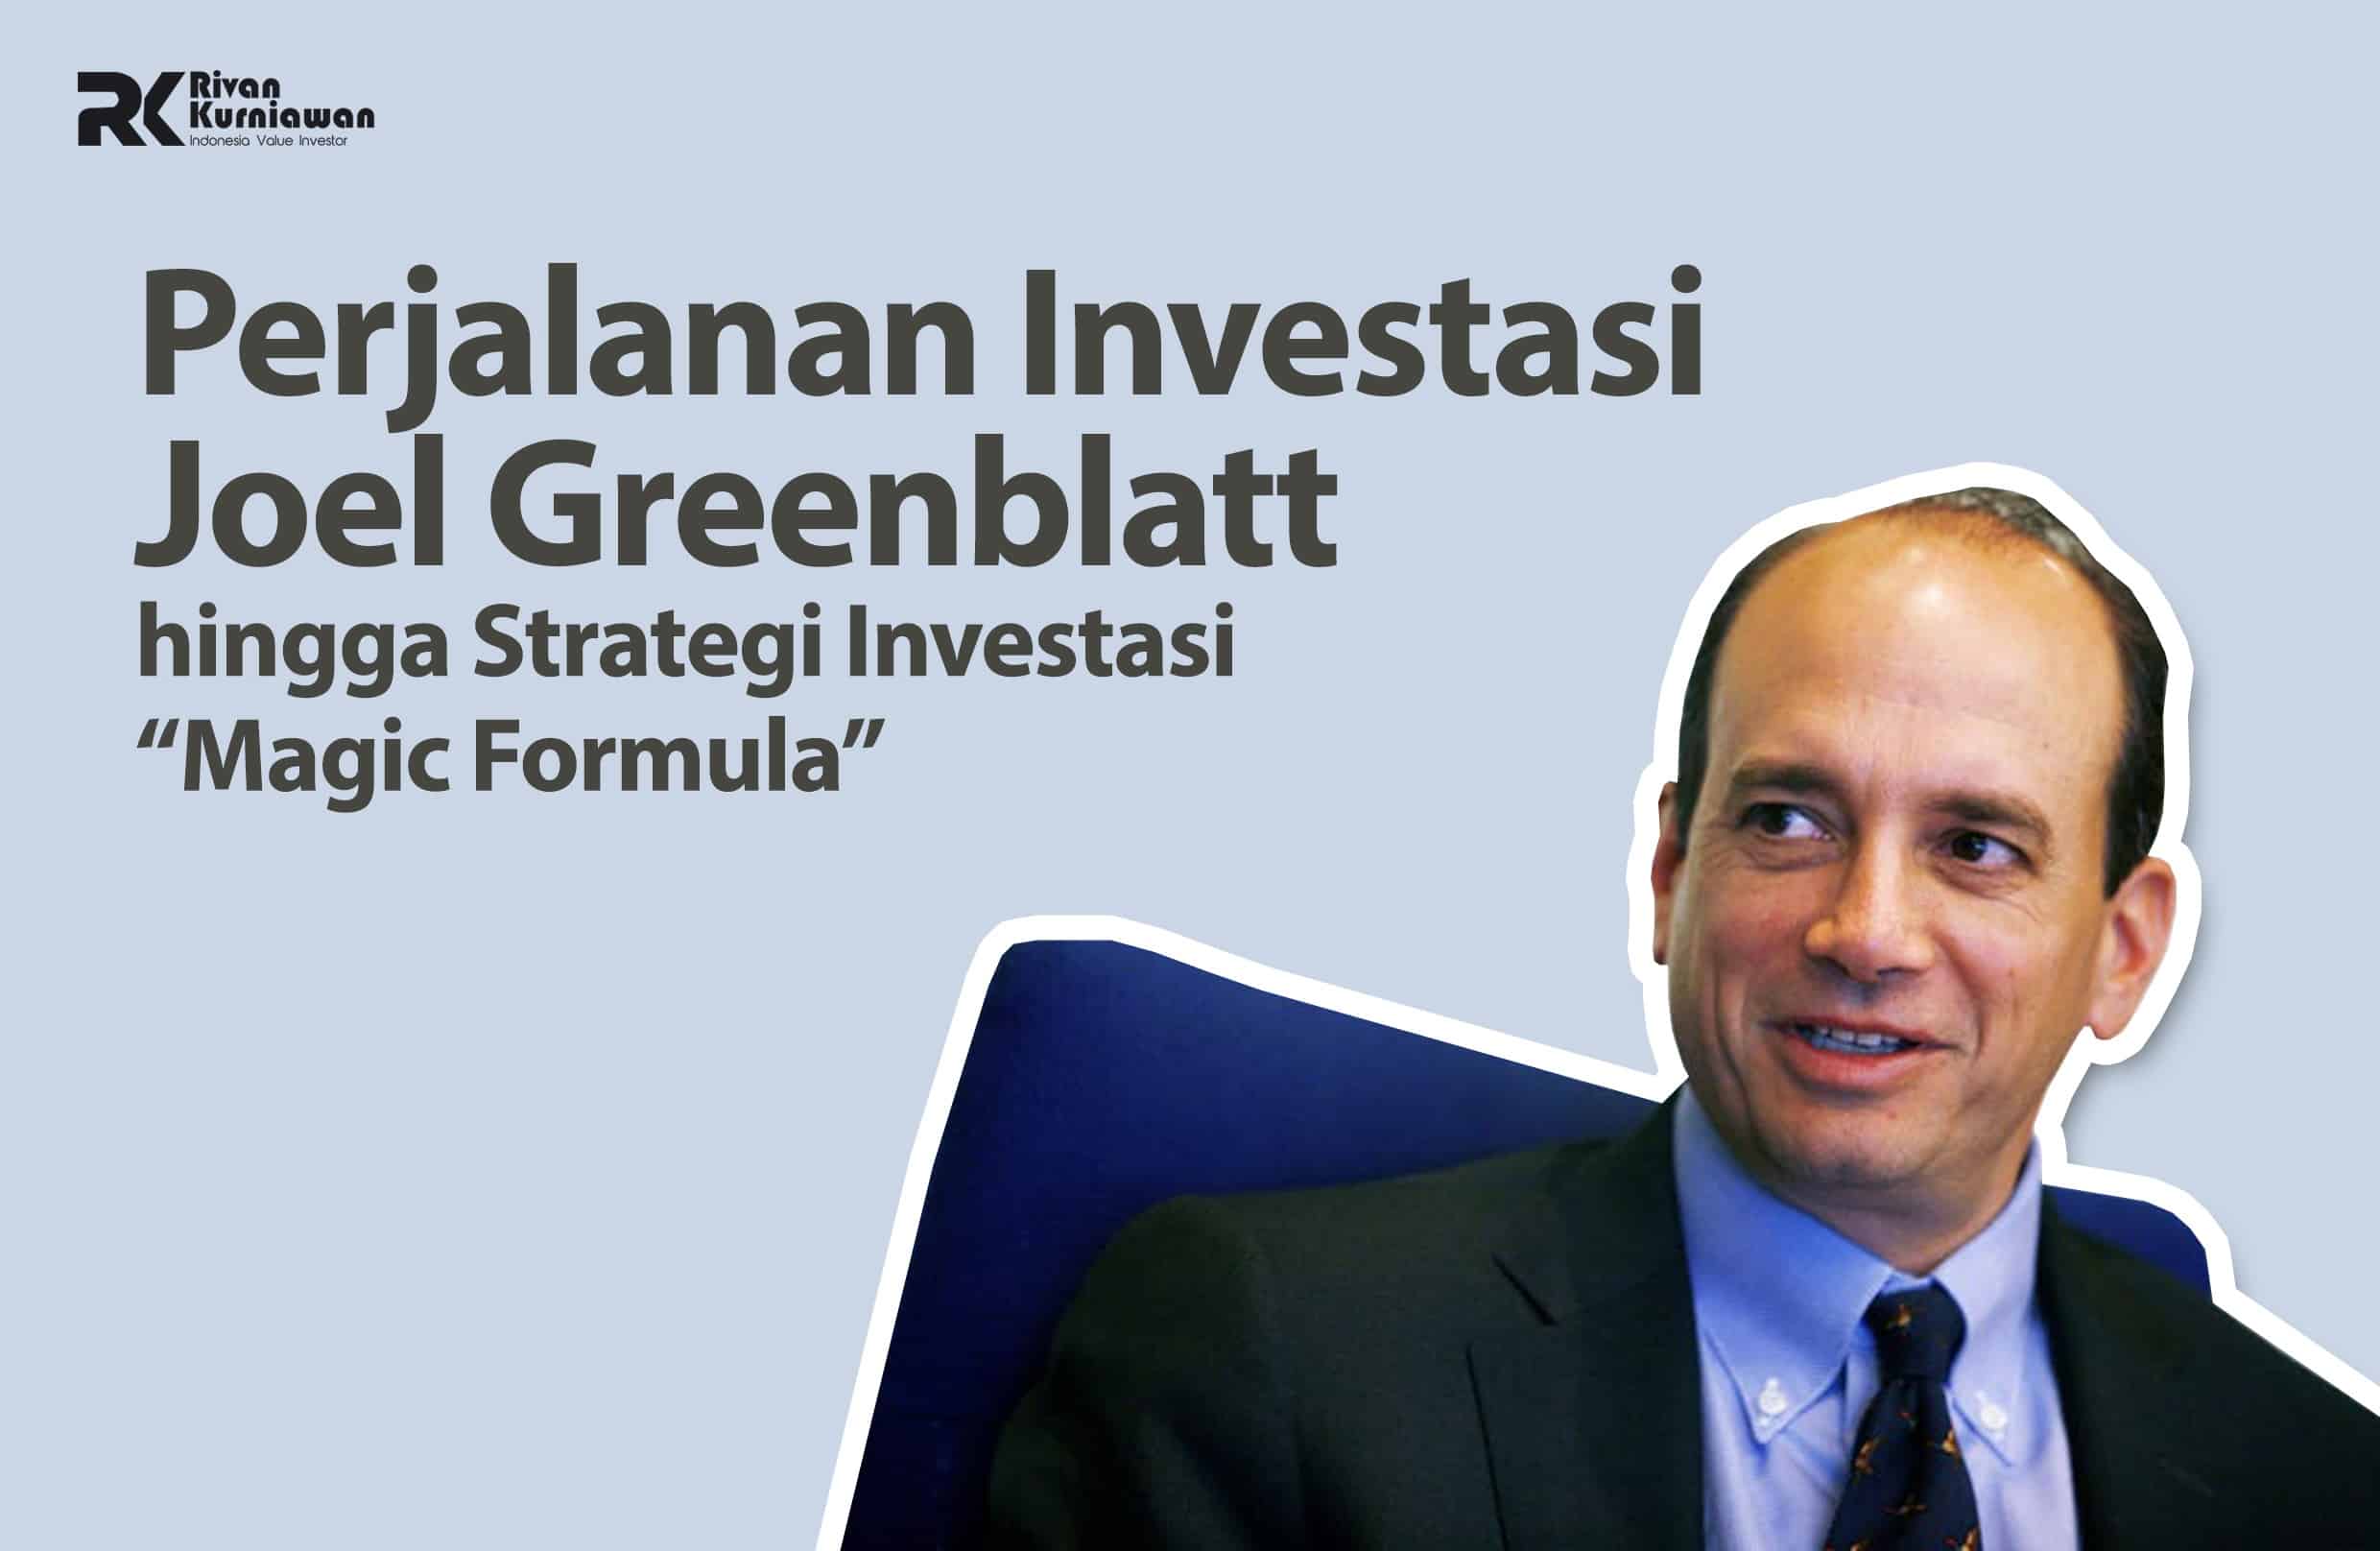 Perjalanan Investasi Joel Greenblatt